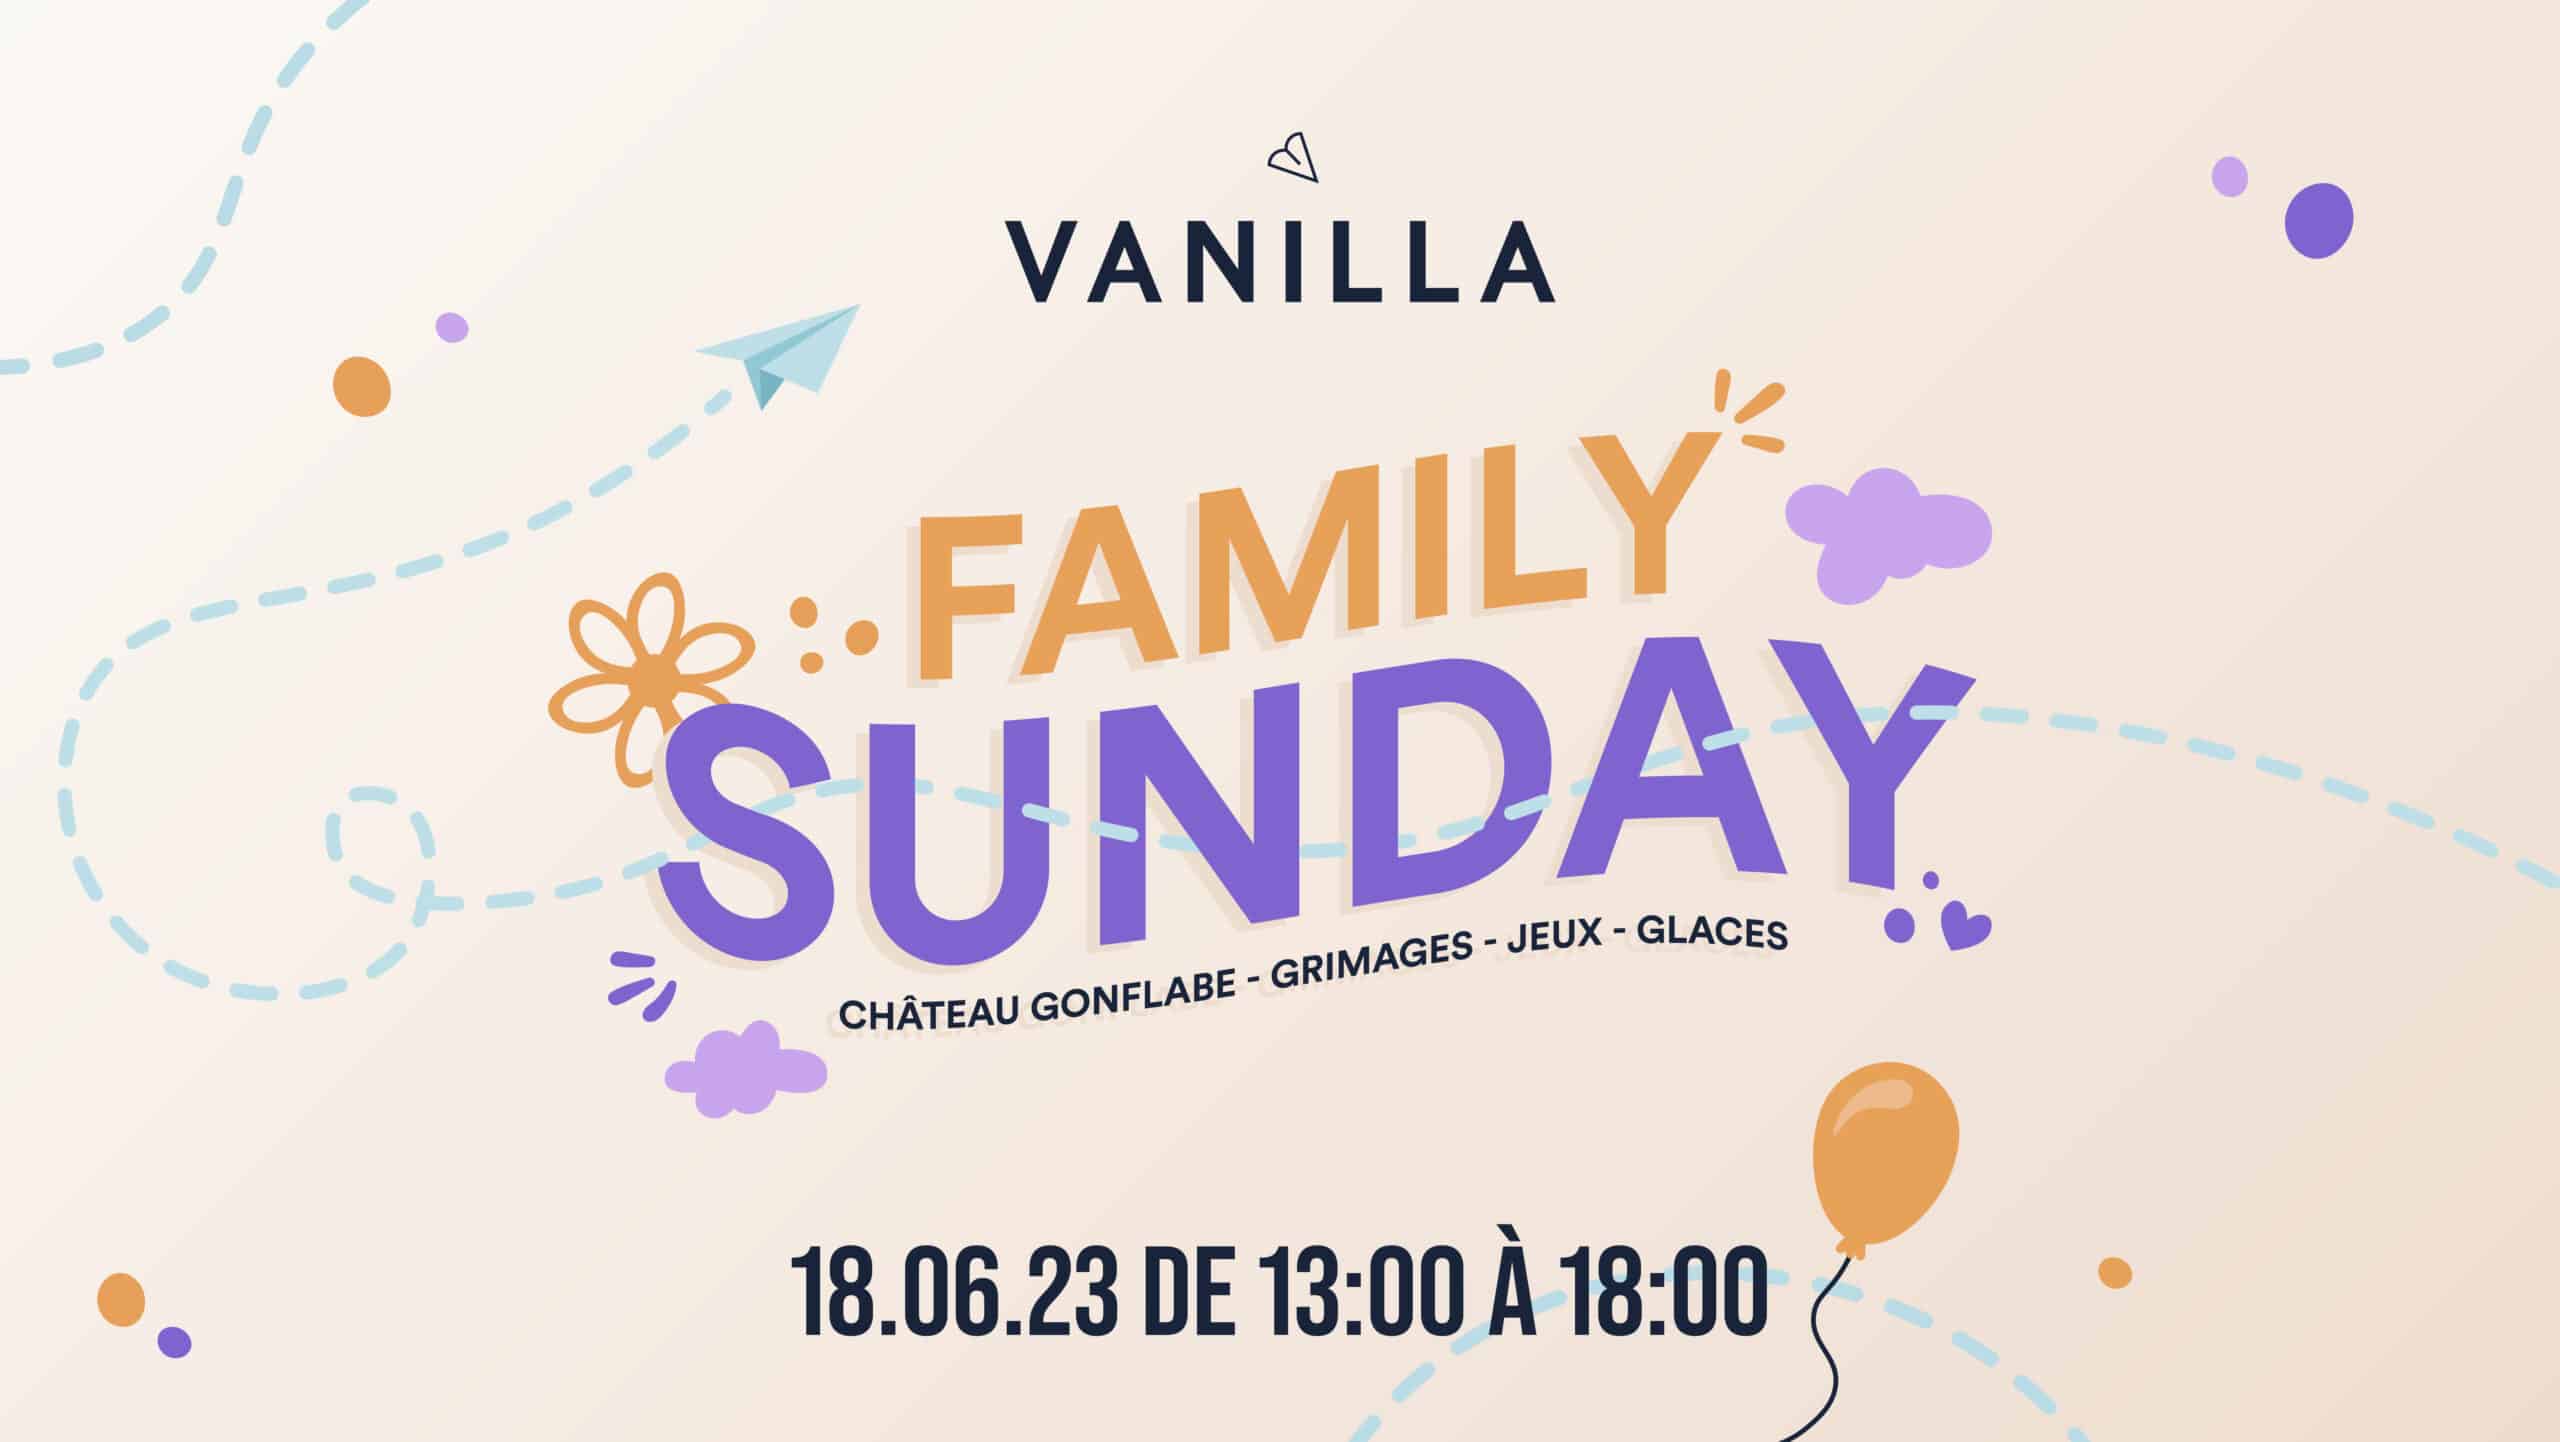 vanilla-events-sunday-ML_Vanilla-event-sunday-06-18